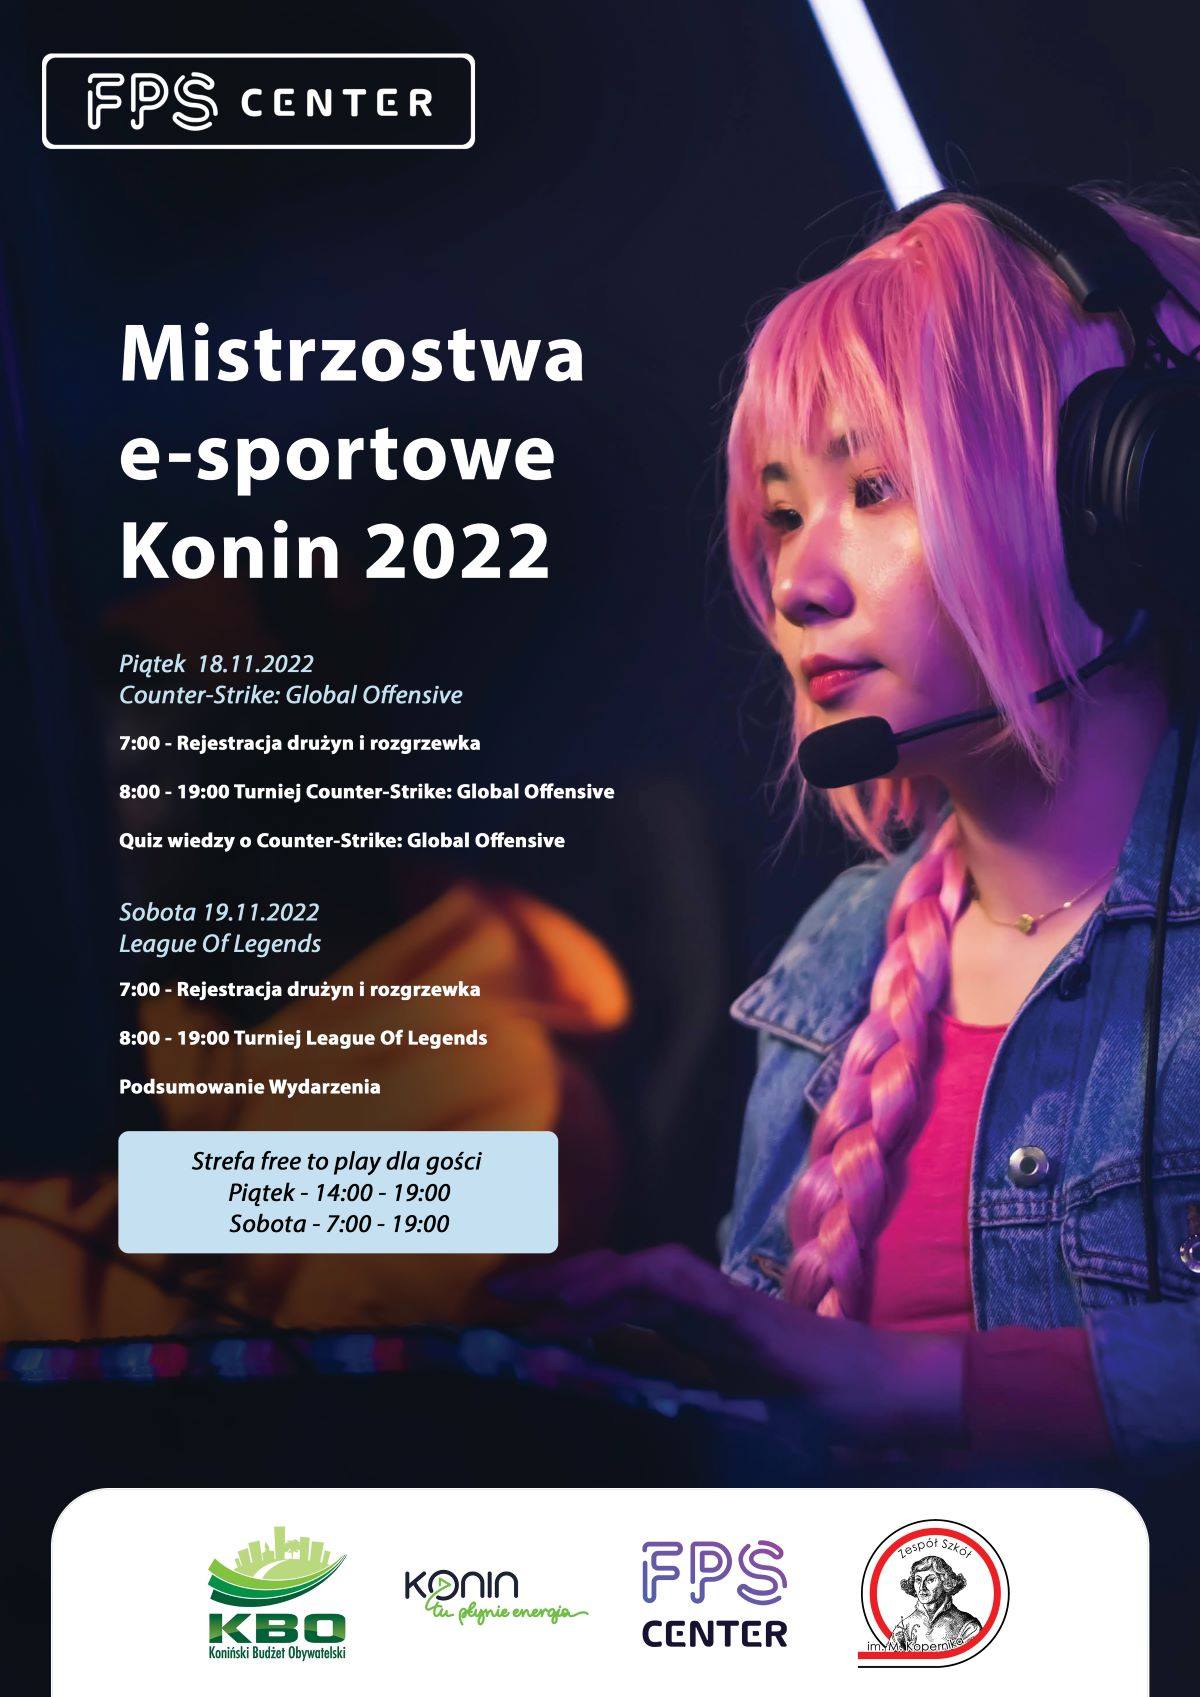 Plakat mistrzostw e-sport 2022. Widoczna jest na nim kobieta w słuchawkach oraz tekst harmonogramu mistrzostw